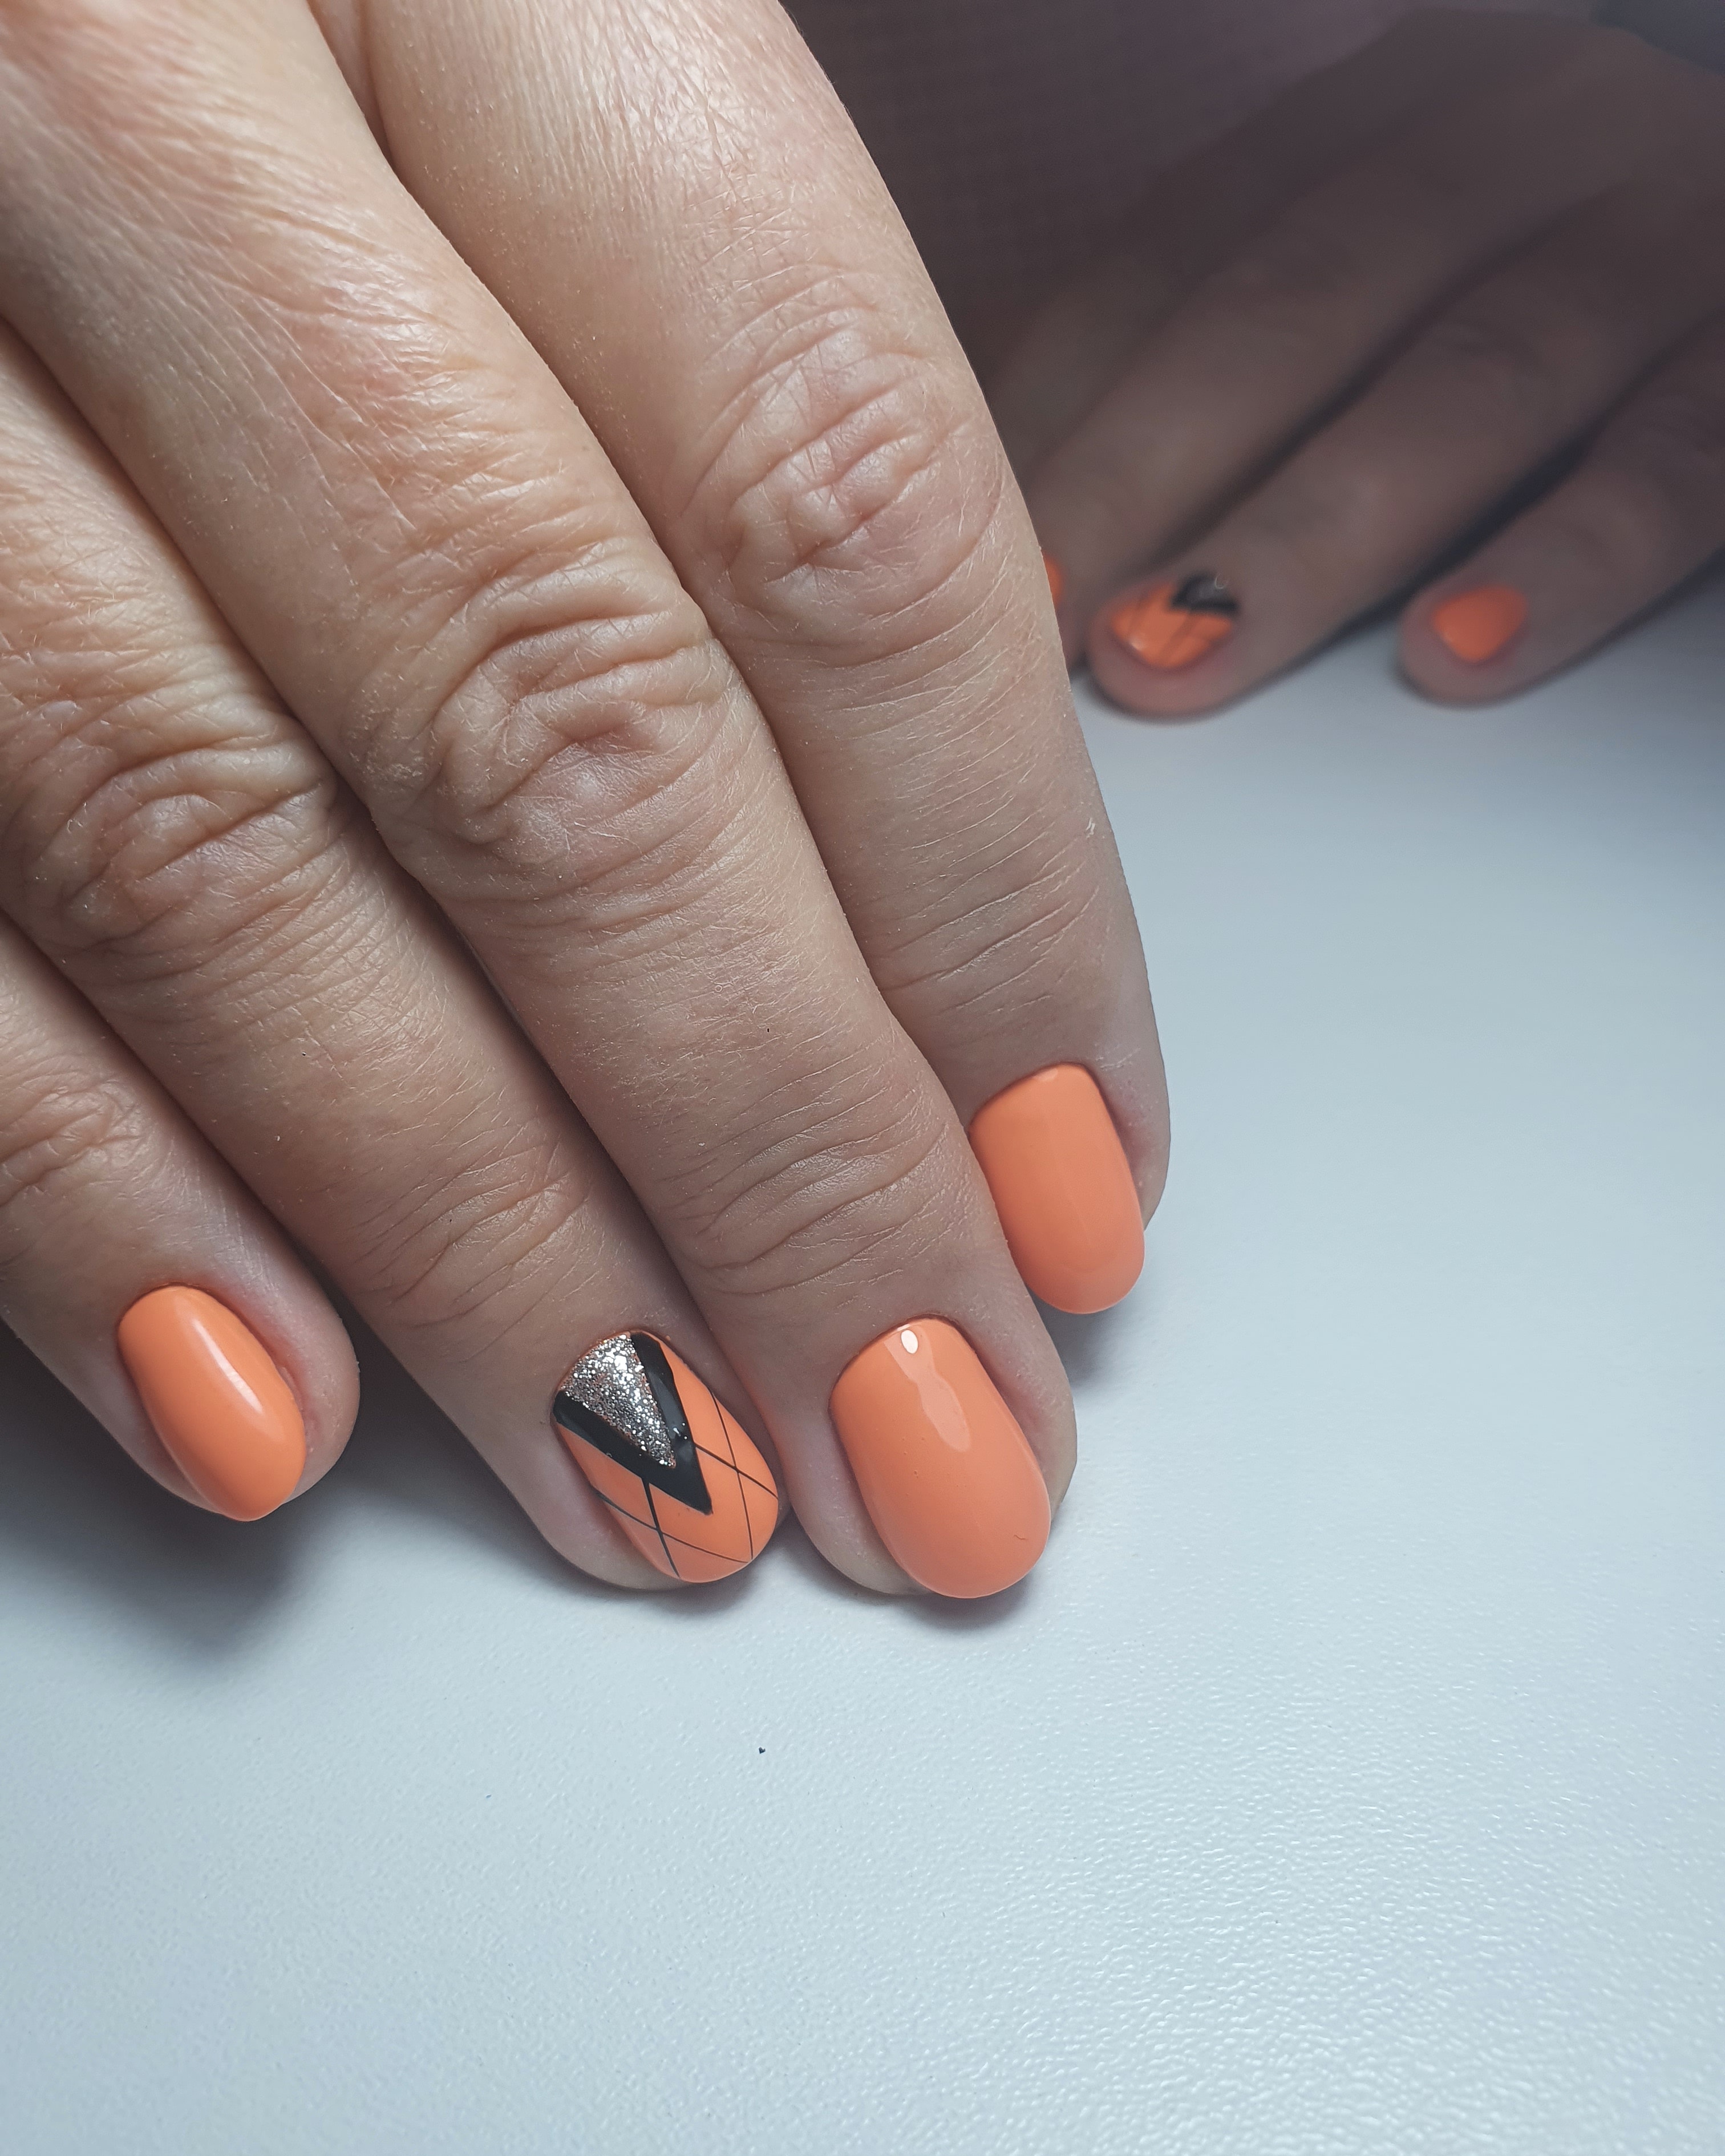 Геометрический маникюр с серебряными блестками в оранжевом цвете на короткие ногти.